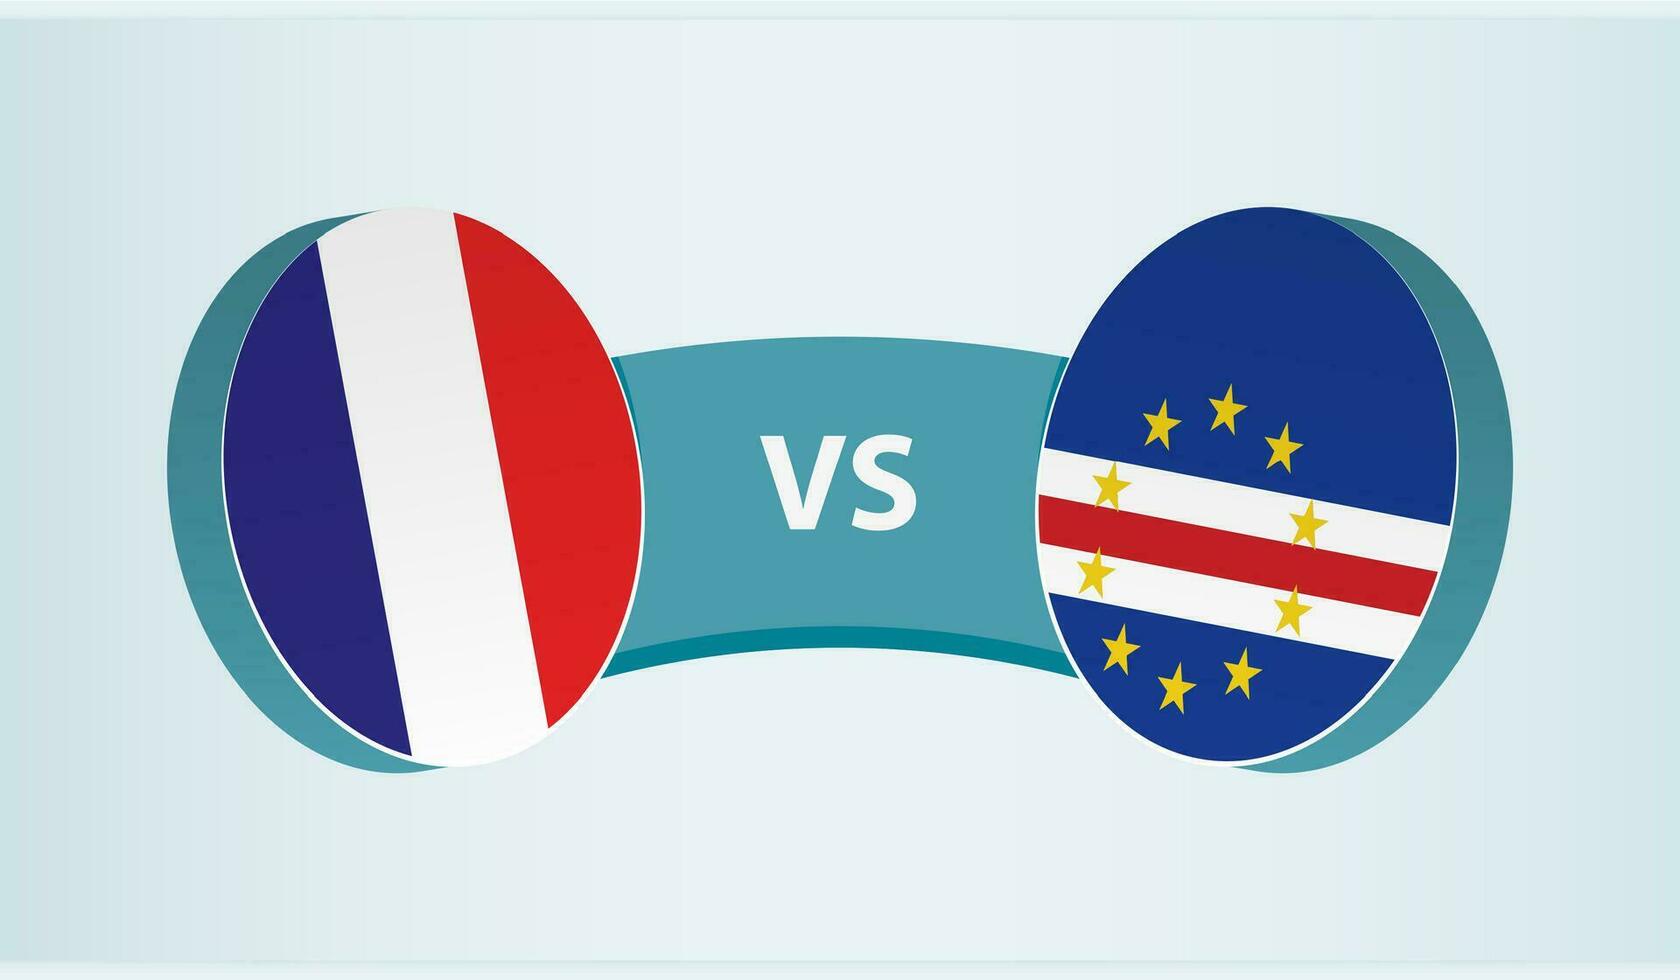 Frankrike mot cape verde, team sporter konkurrens begrepp. vektor